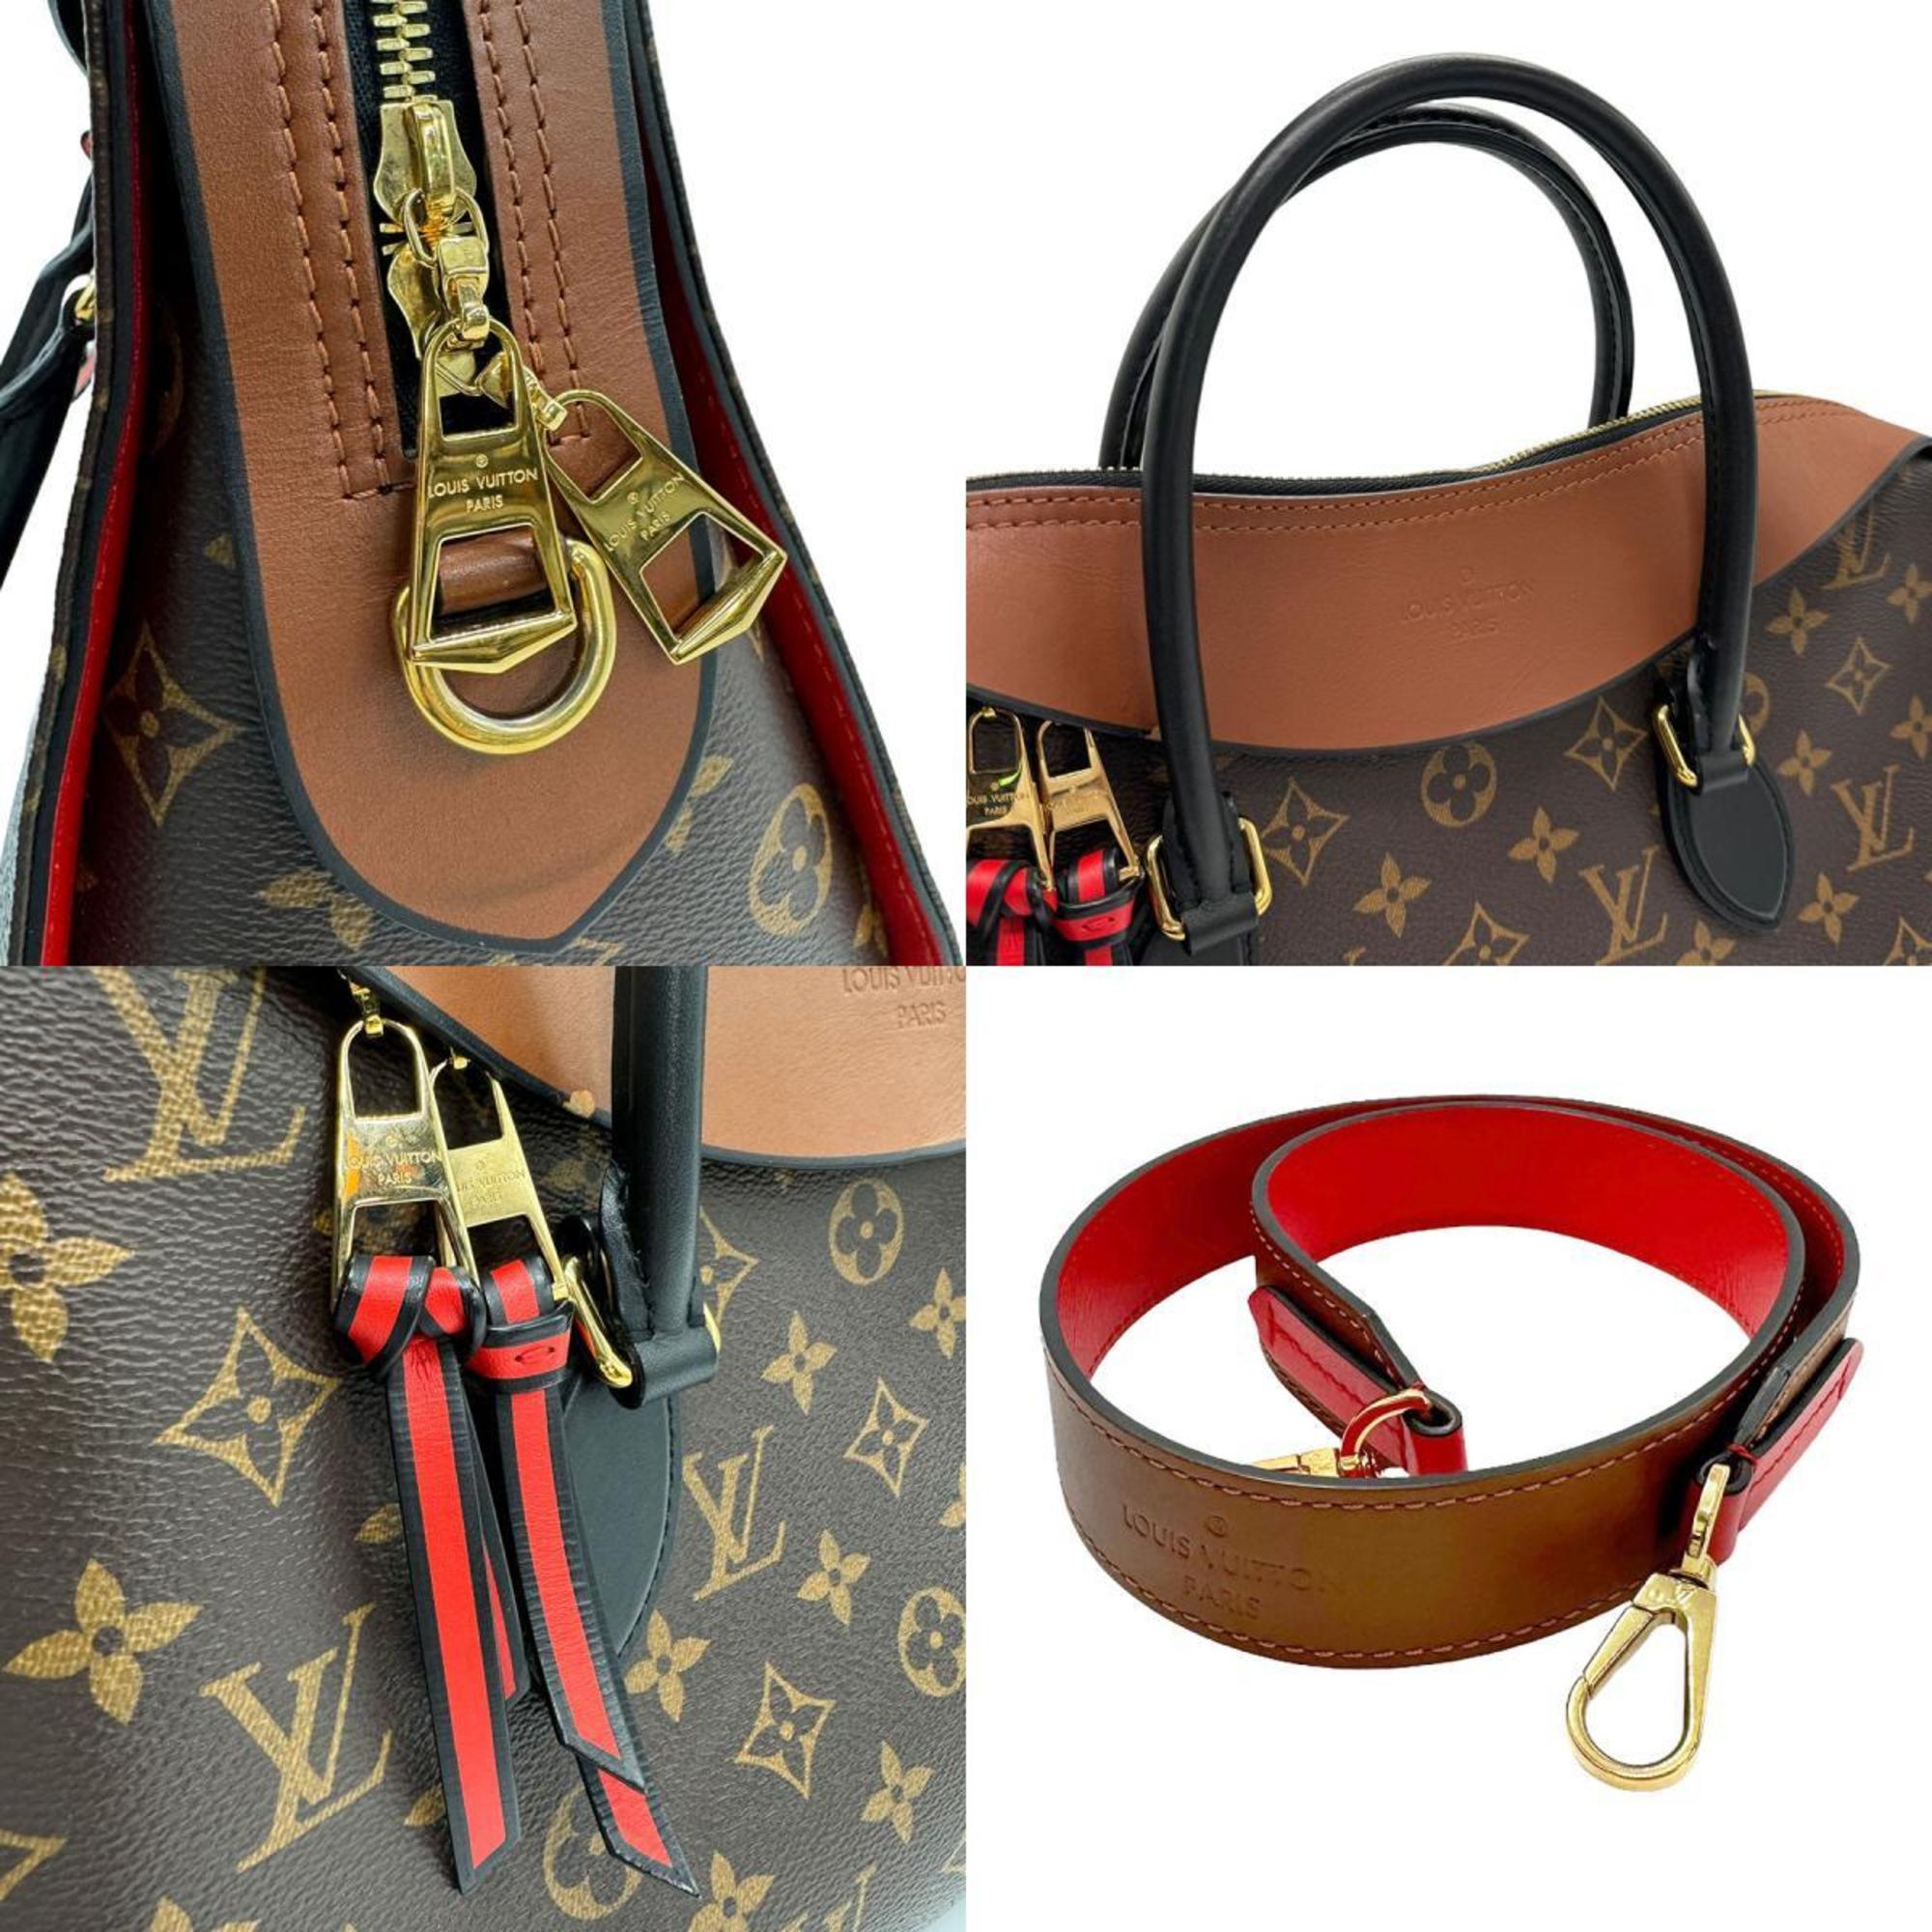 Louis Vuitton LOUIS VUITTON Handbag Shoulder Bag Monogram Tuileries Tote Canvas Leather Brown Black Gold Women's M41456 z1049